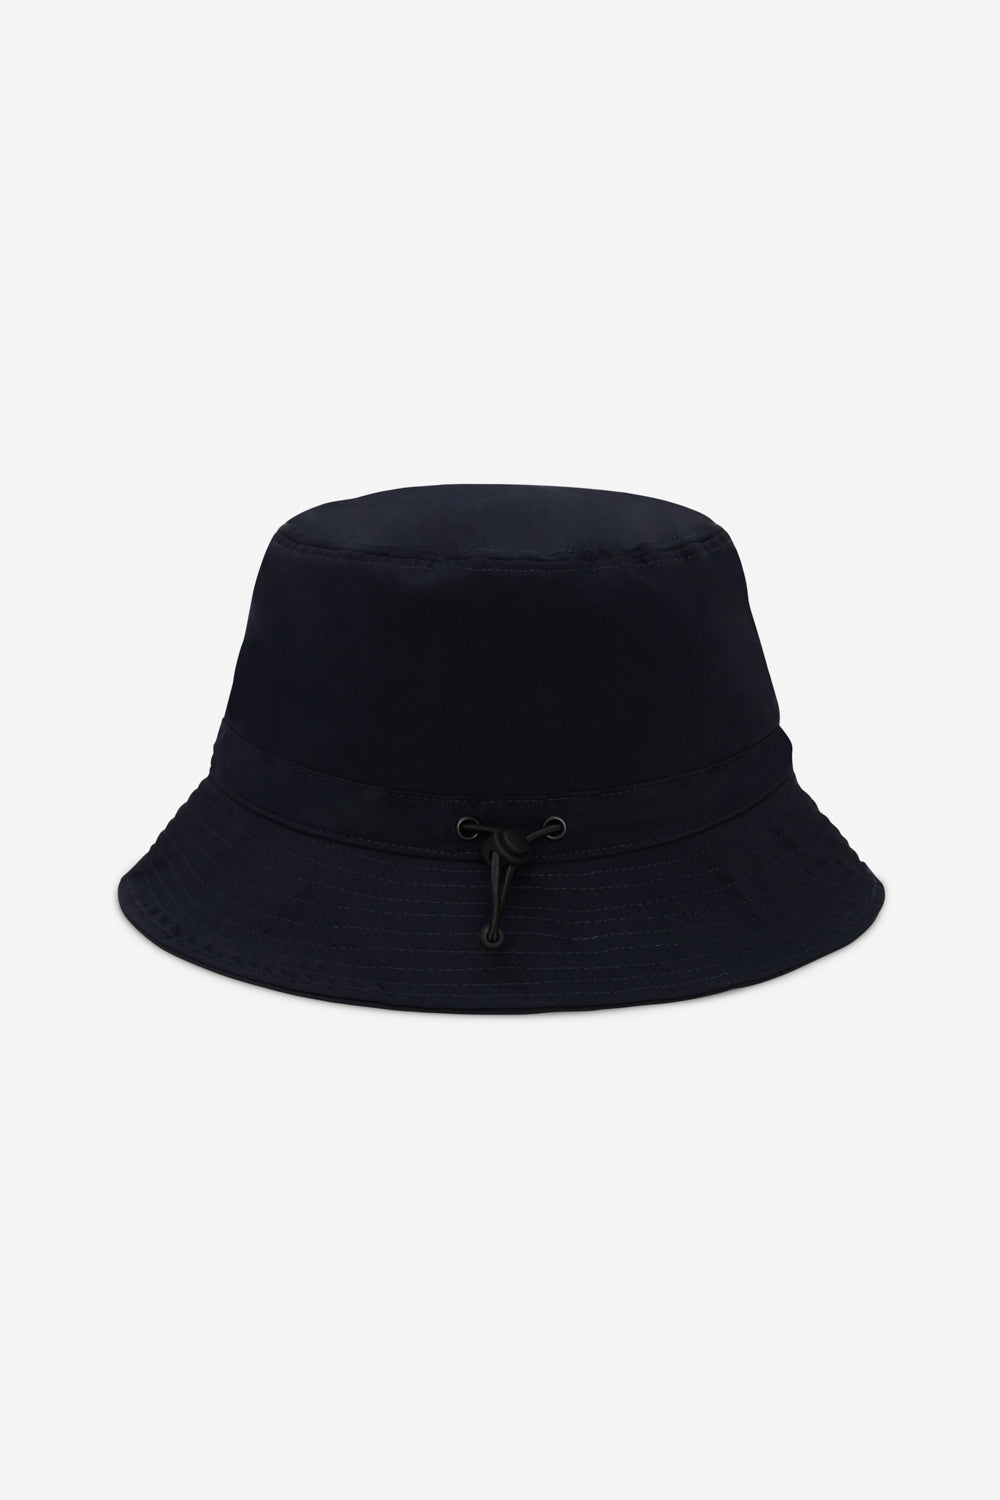 BLUE BAS BUCKET HAT 